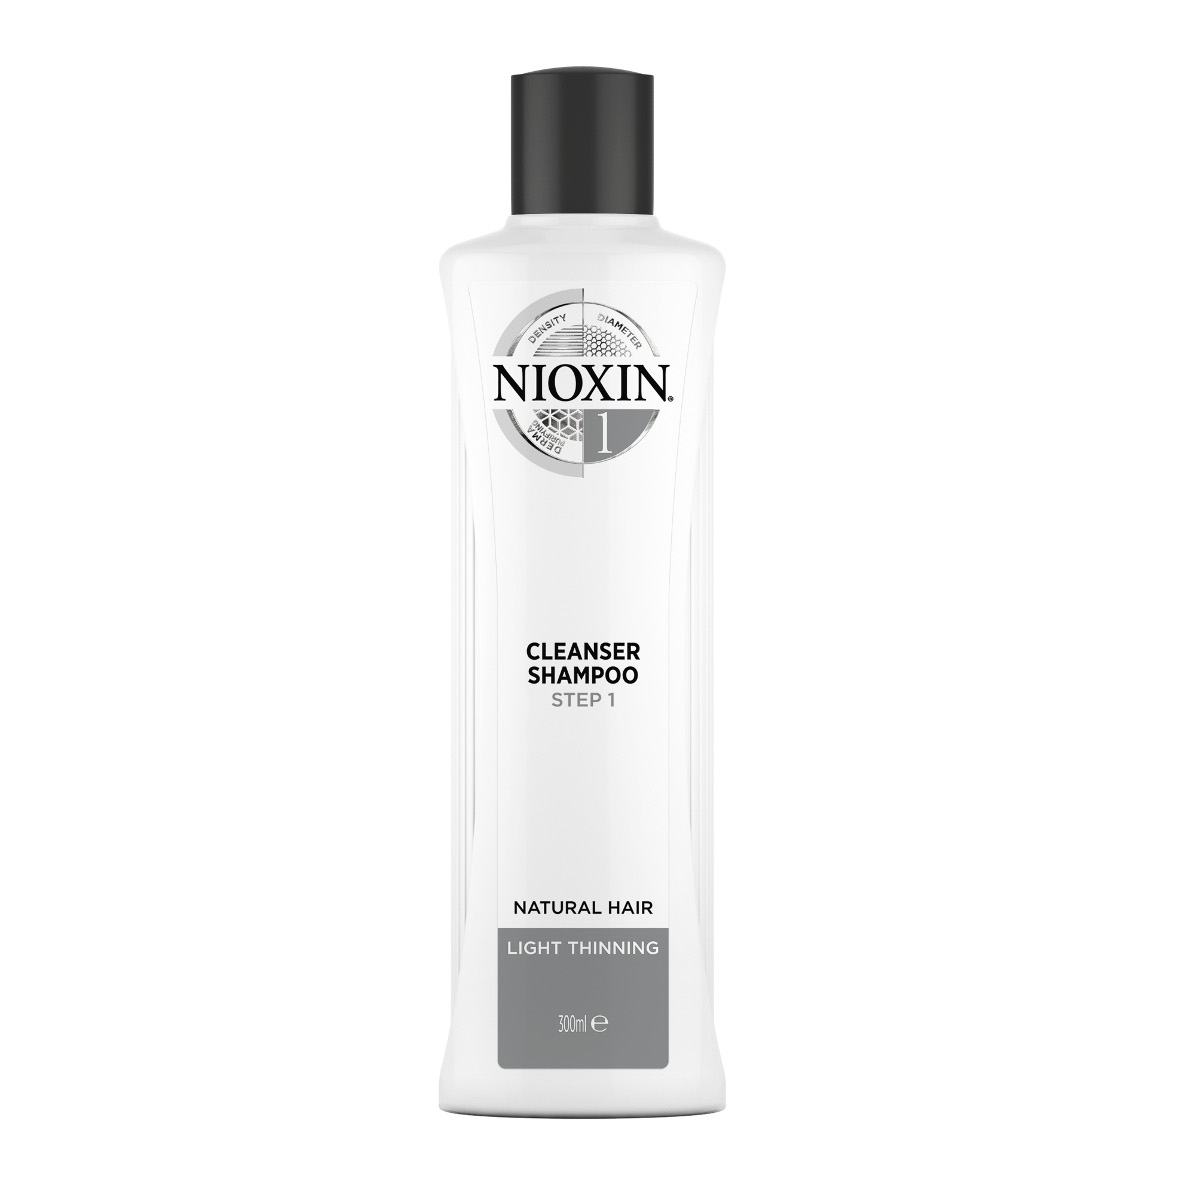 szampon nioxin opinie